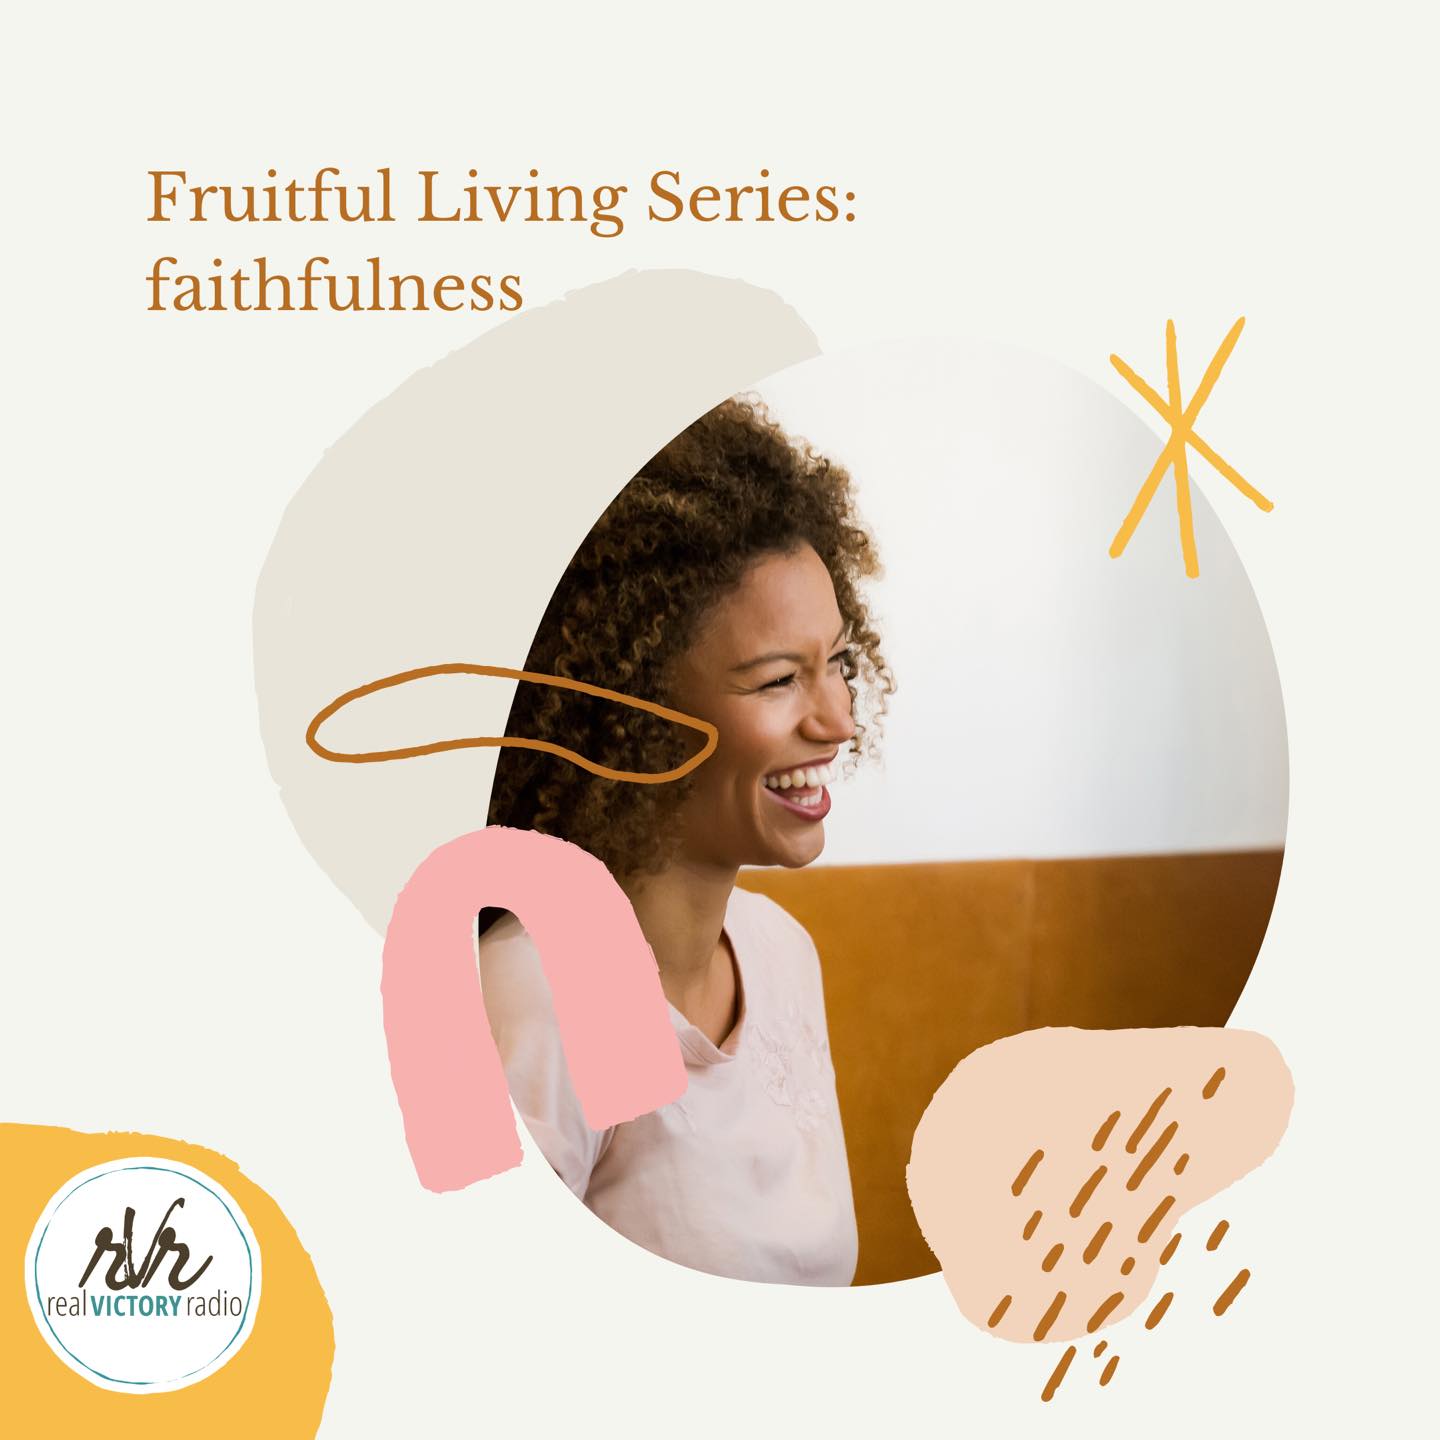 faithfulness fruitful living series rvr